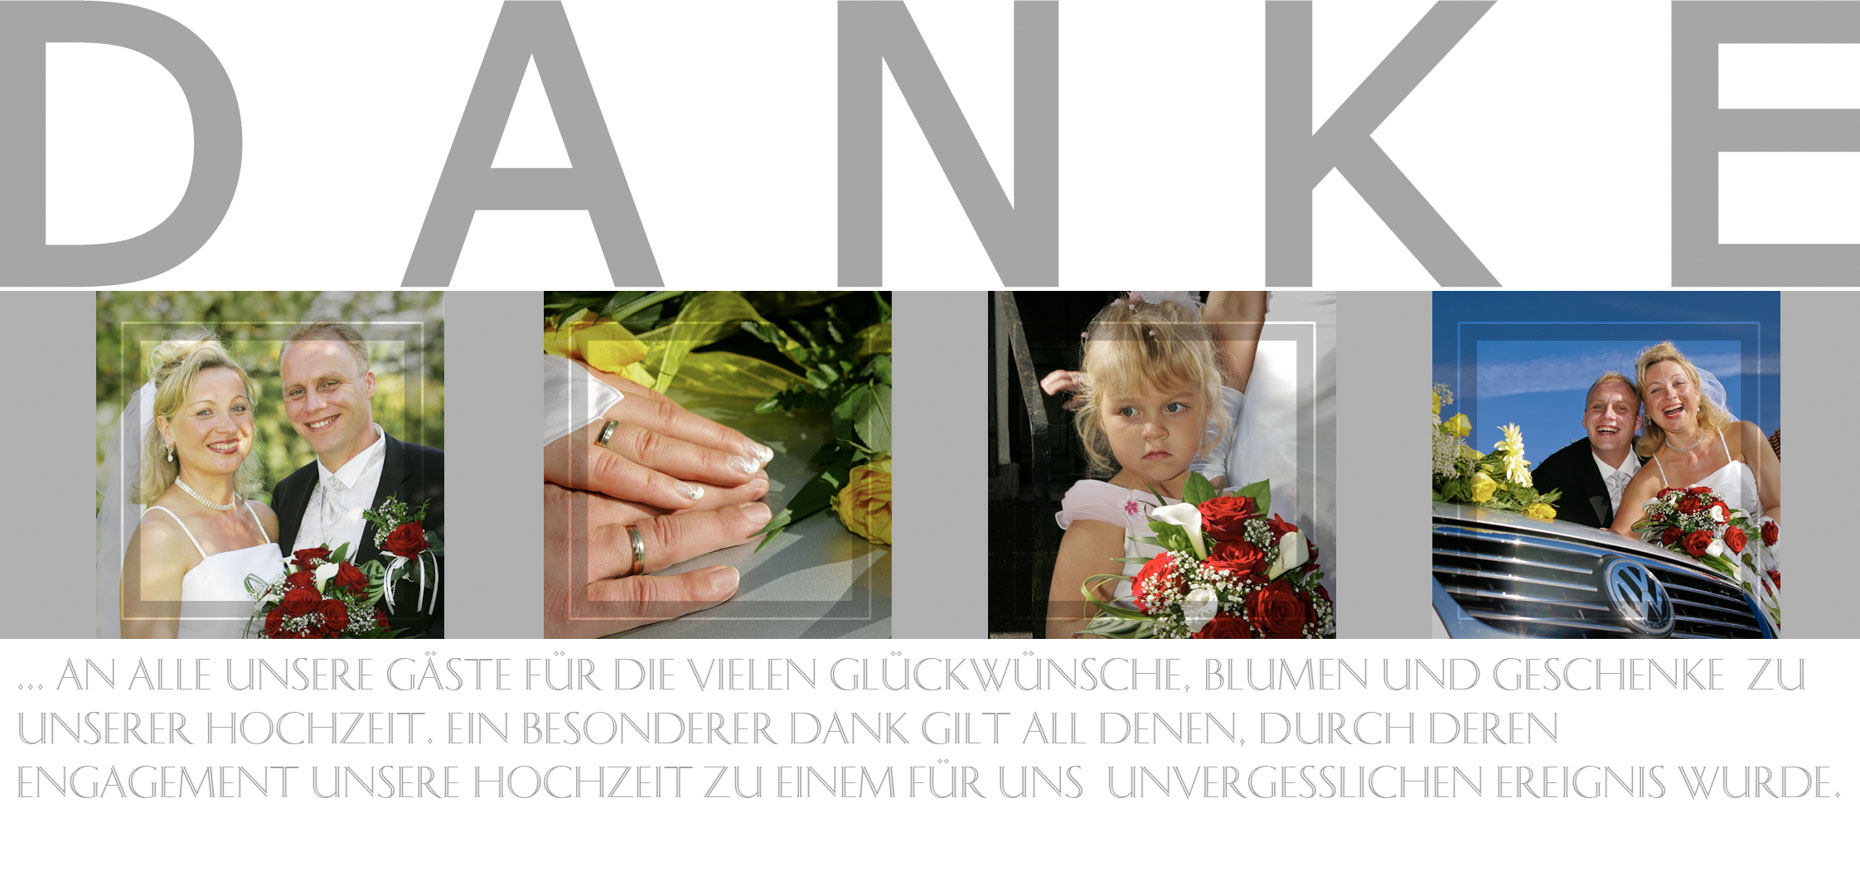 Hochzeitsfotograf in Kassel: Hochzeit Danksagungskarte #05